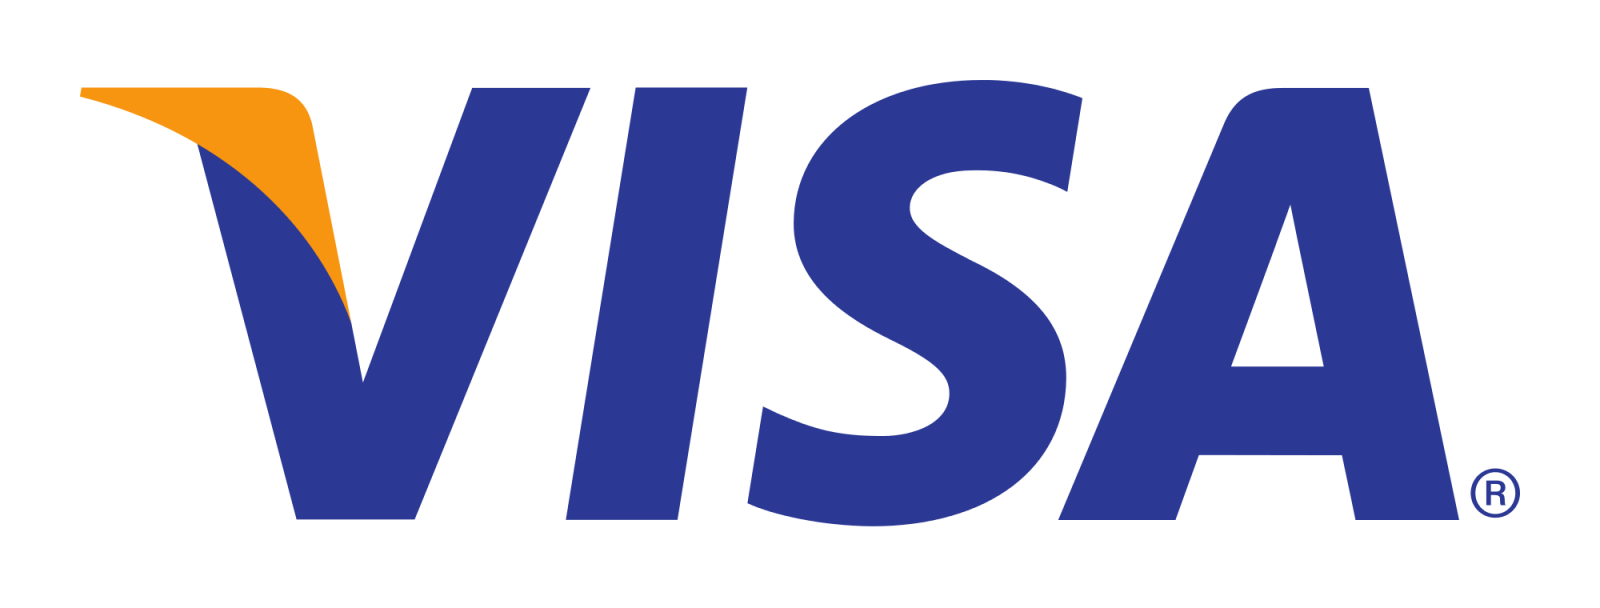 Visa_Inc._logo.svg_.png